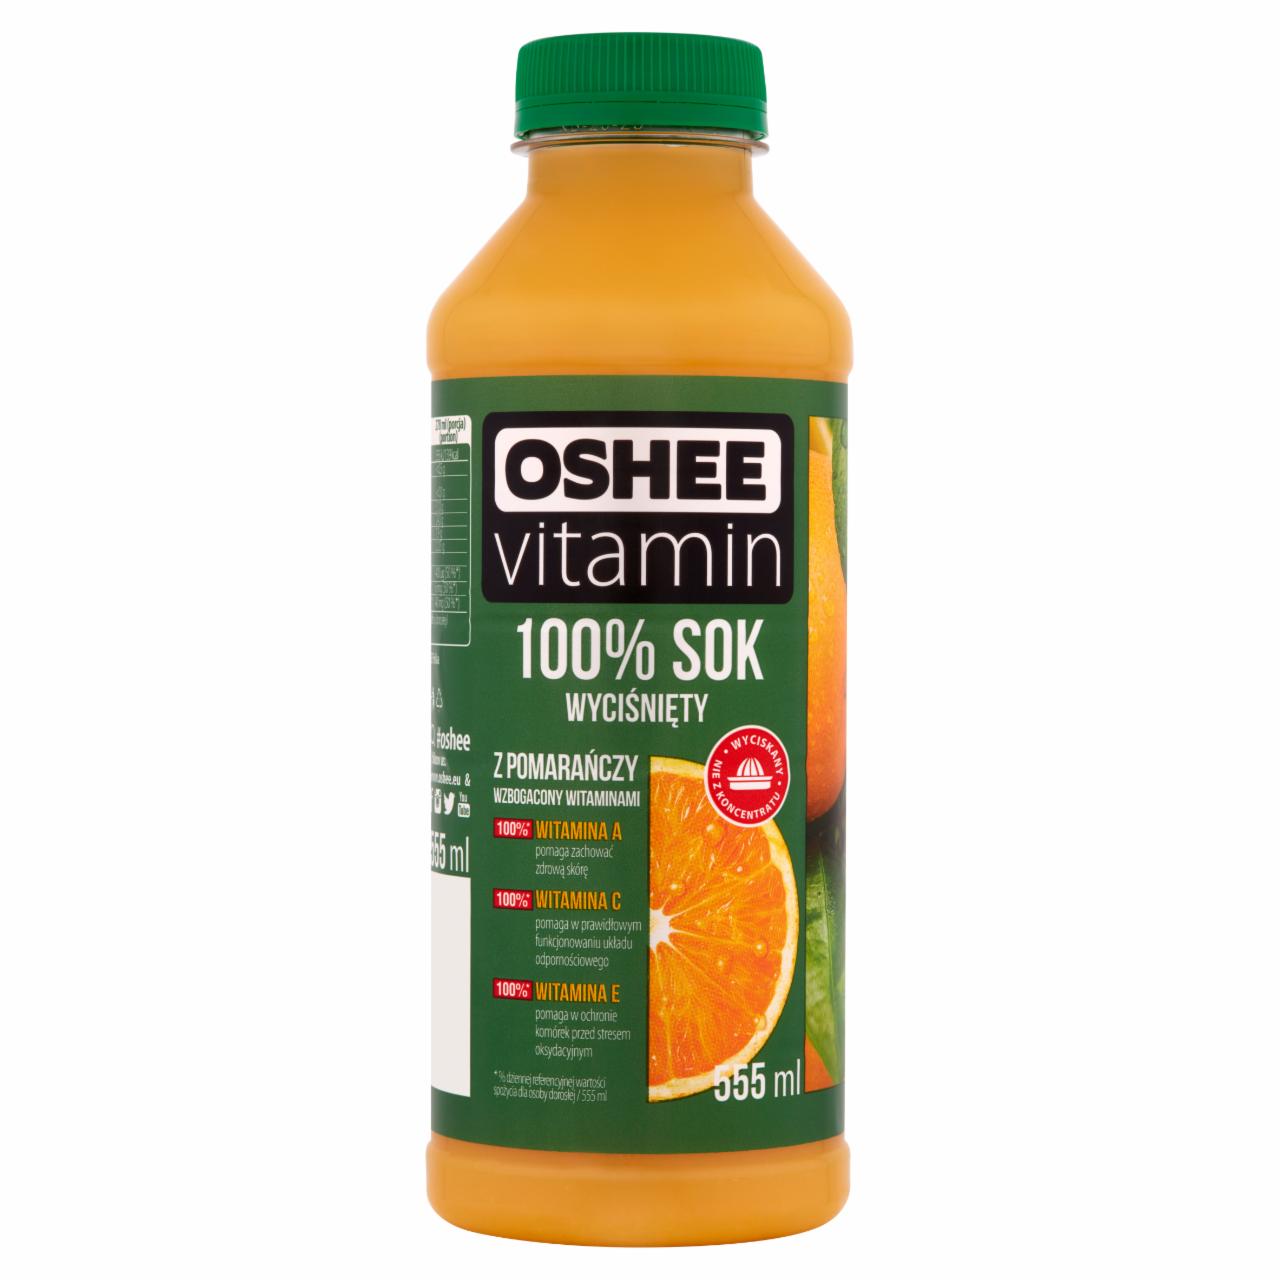 Zdjęcia - Oshee Vitamin 100% Sok wyciśnięty z pomarańczy wzbogacony witaminami 555 ml